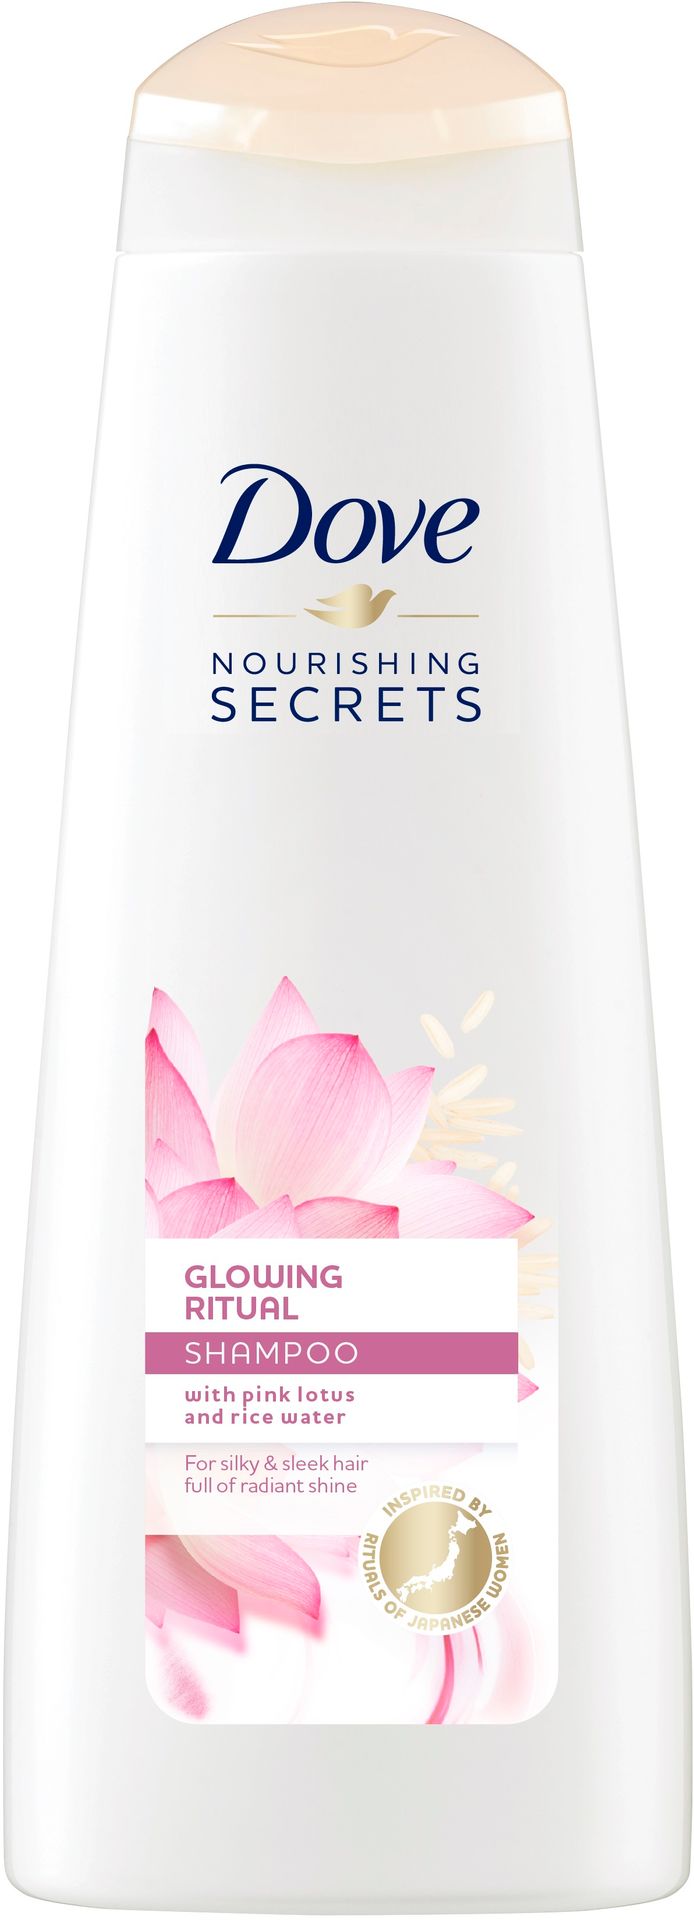 Dove Nourishing Secrets, szampon do włosów suchych i matowych, 250 ml